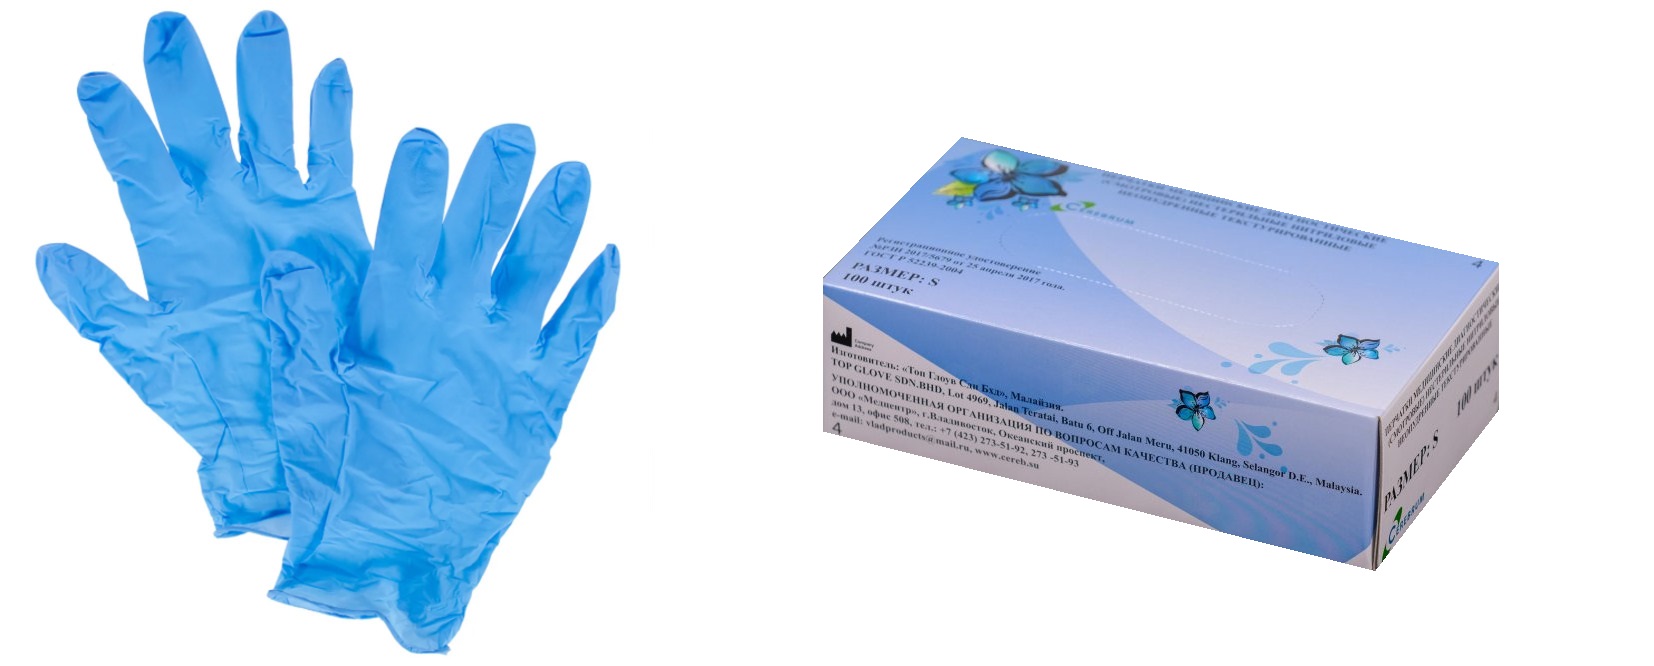 Перчатки медицинские диагностические (смотровые) нестерильные нитриловые неопудренные / с полимерным покрытием текстурированные.  Размер L. Голубого цвета.